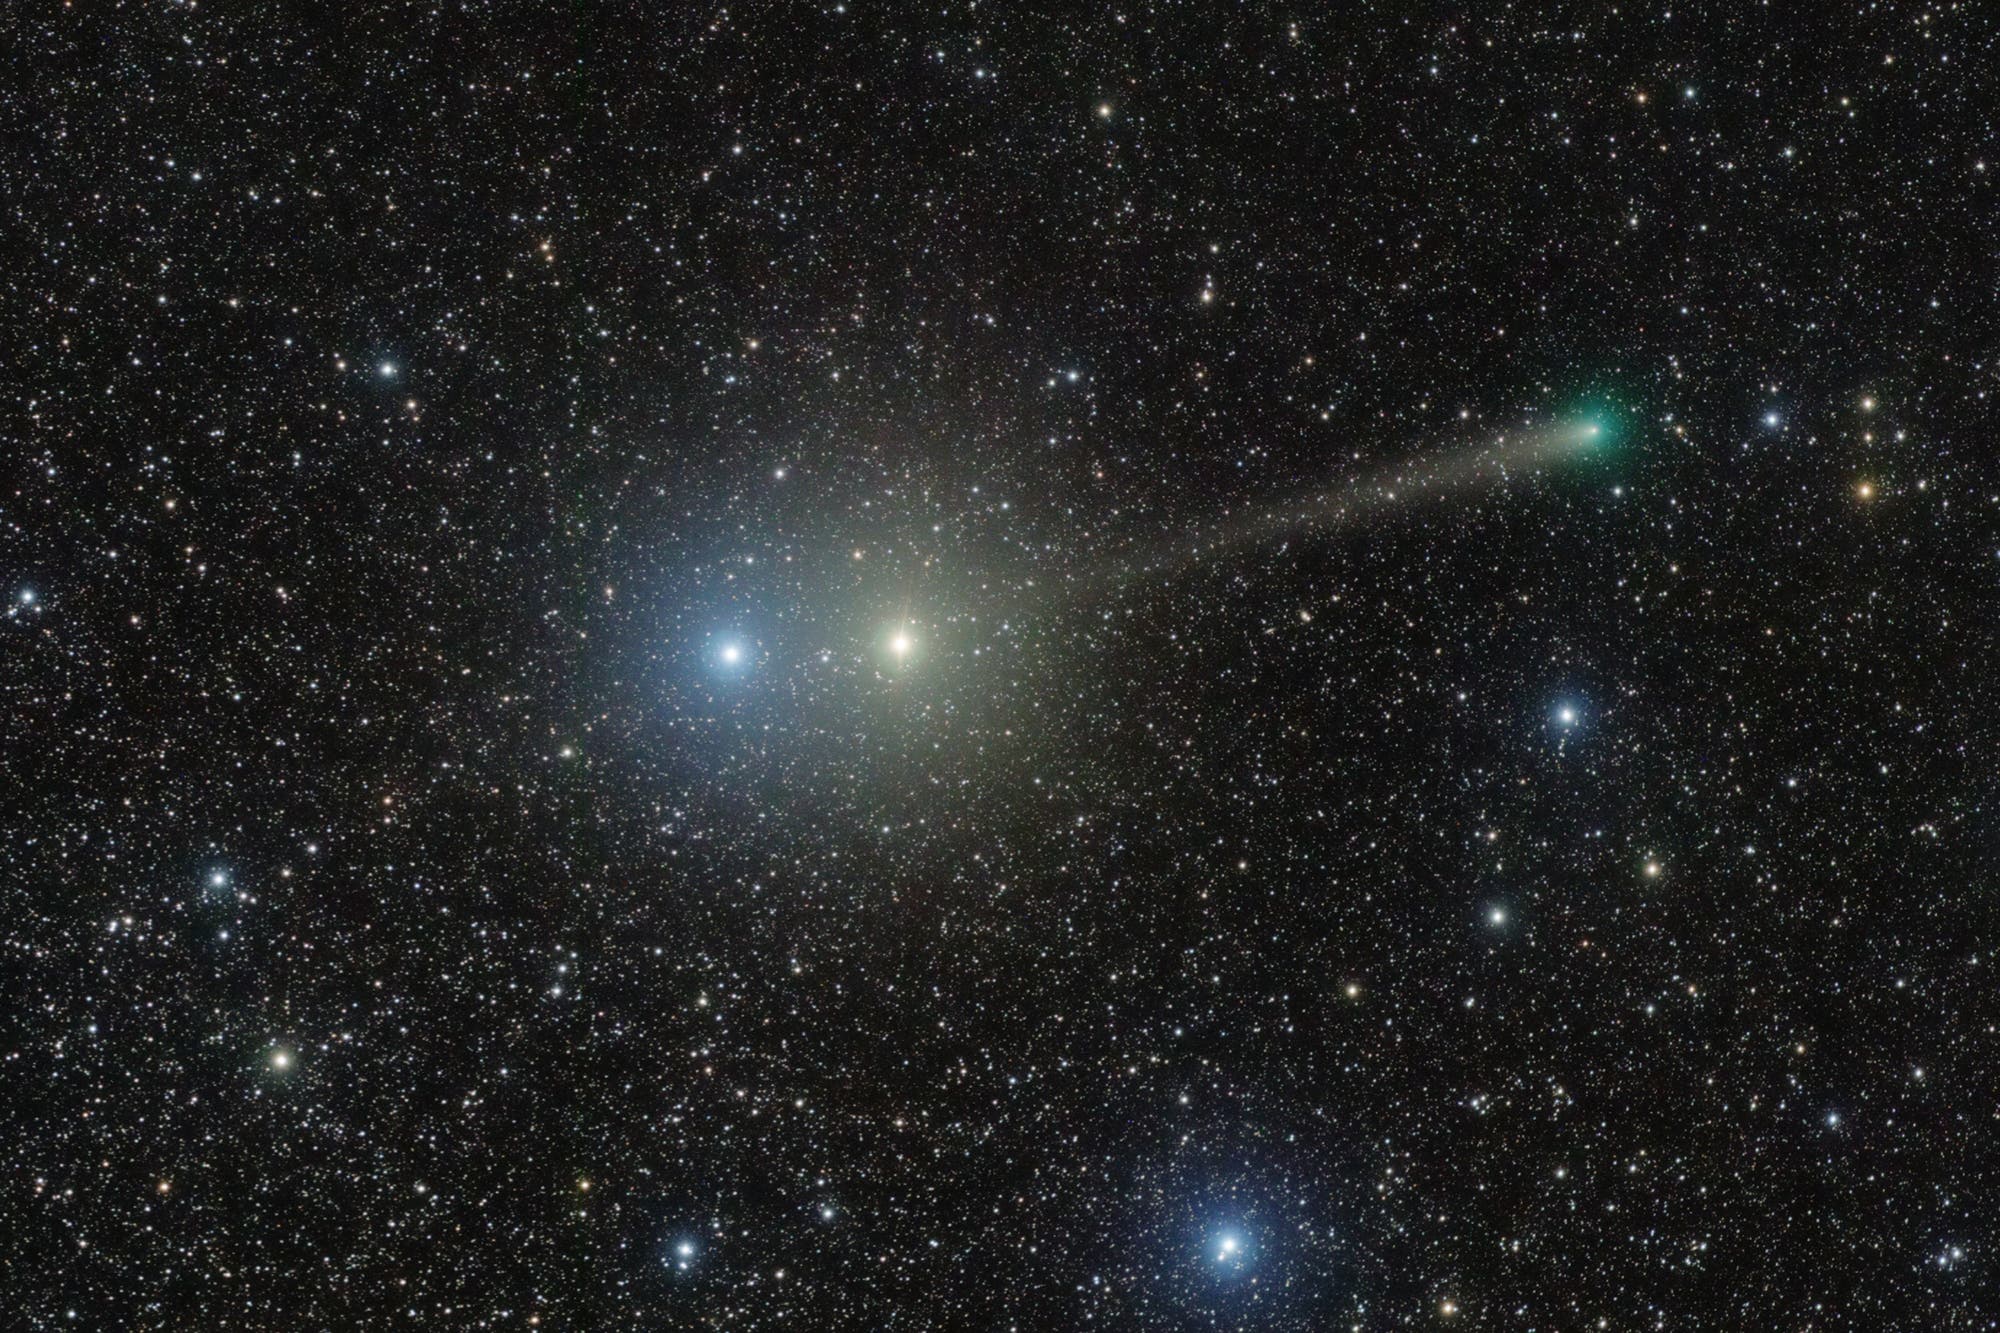 Comet PanSTARRS between Centaurus jewels